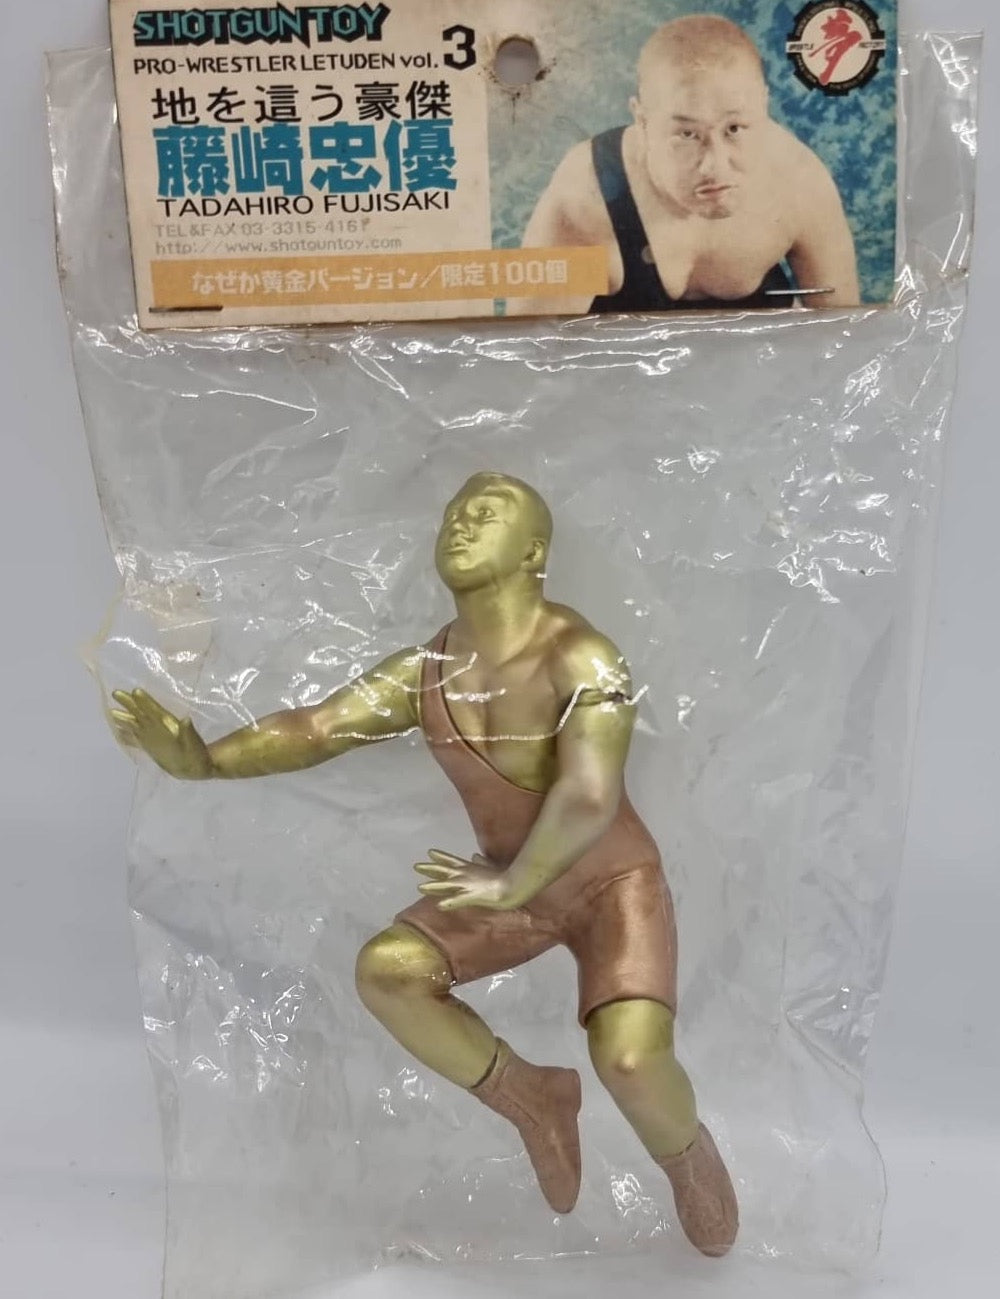 Shotgun Toy Pro-Wrestler Letuden Vol. 3 Tadahiro Fujisaki [Gold Edition]